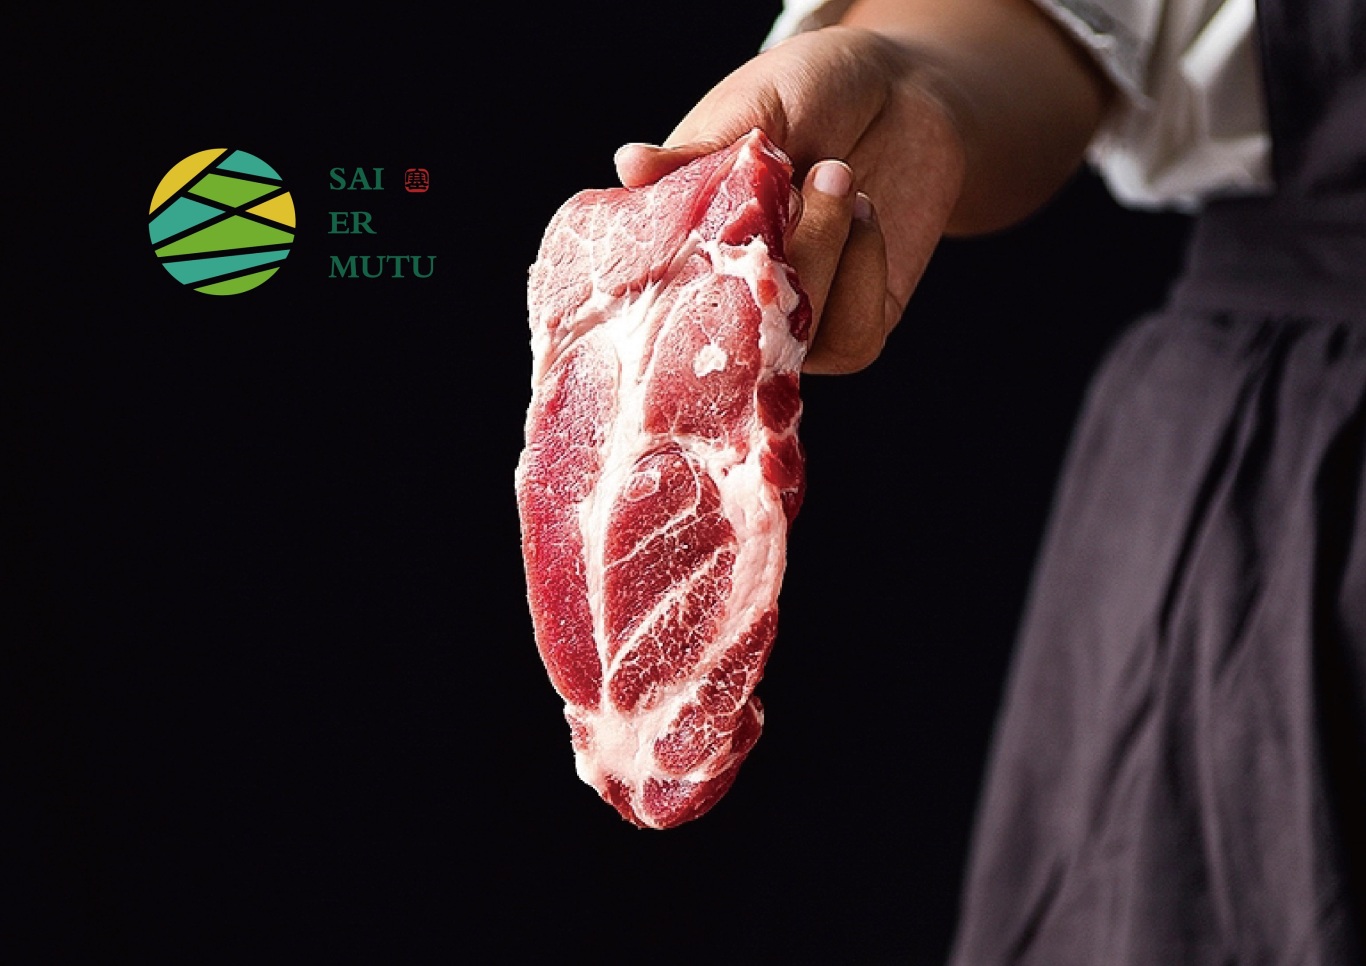 塞尔木图——食品/饮品 肉类食品/制品 生鲜 羊肉 牛肉LOGO设计图0